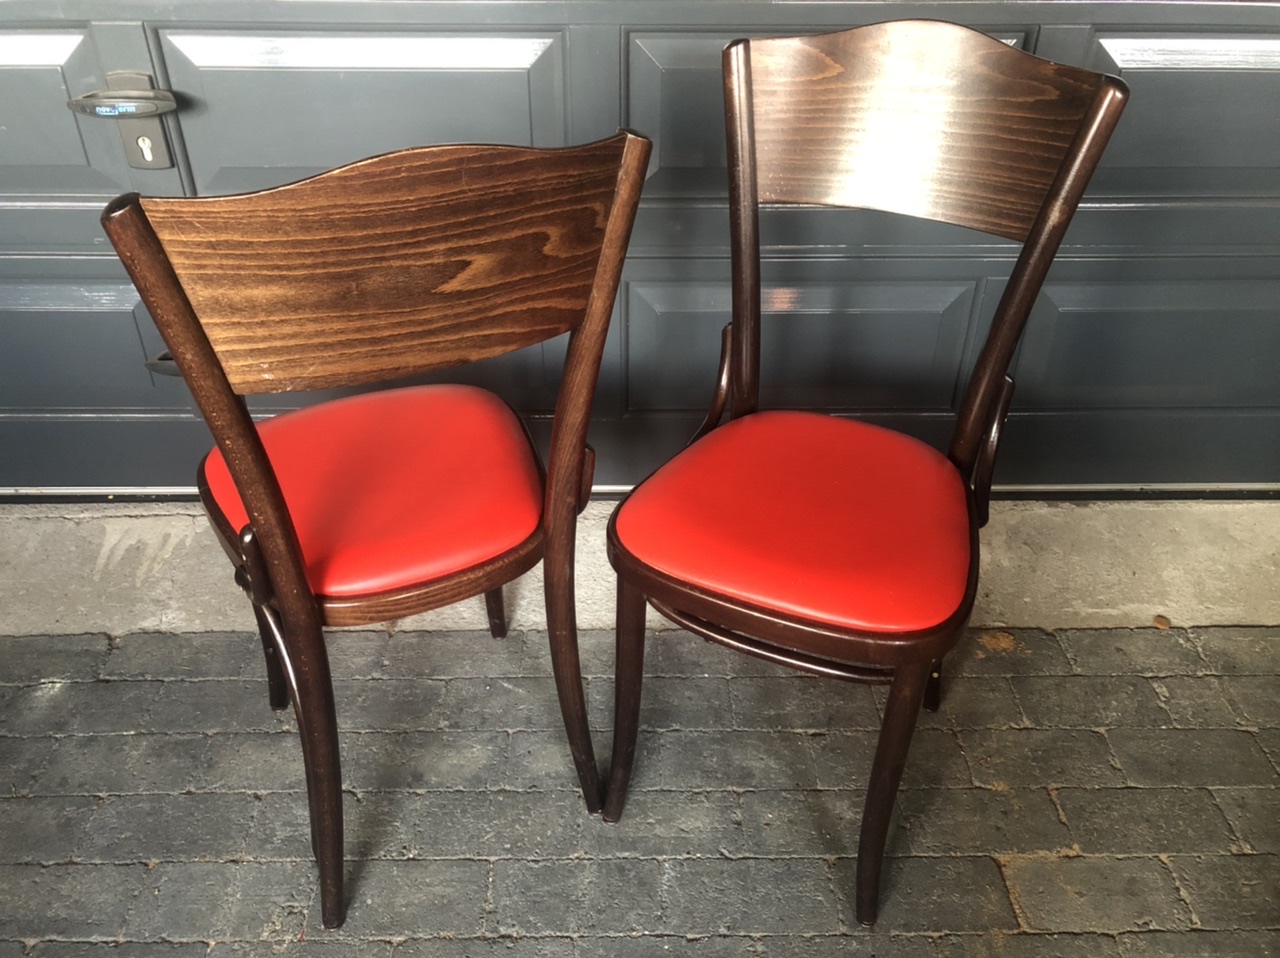 Cafestoelen anti corona crisis de parel horeca meubilair pub furniture kroeg stoelen cafe thonet chairs stolar